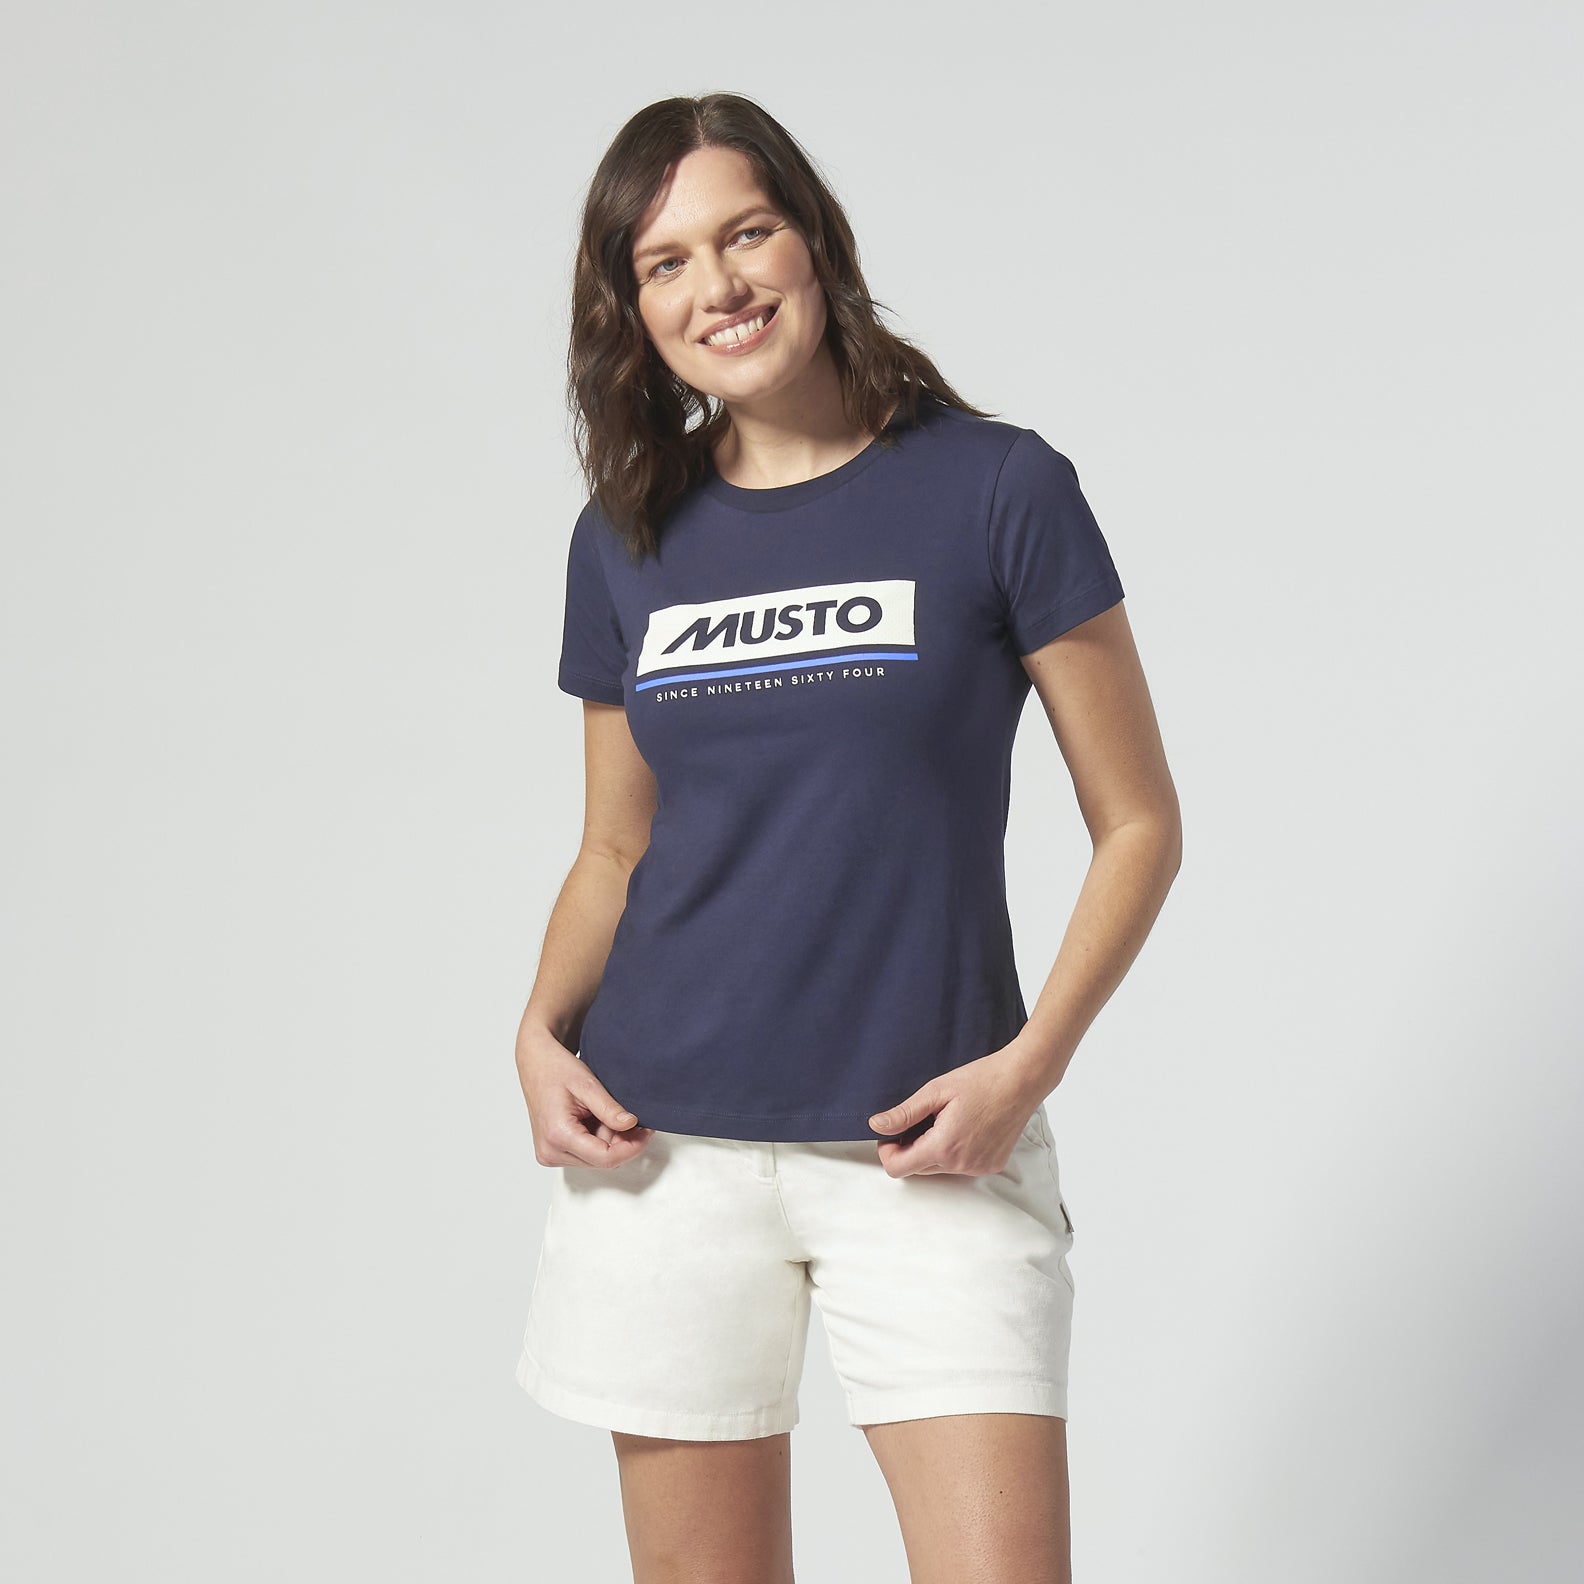 Musto-Womens-T-Shirt-2.0